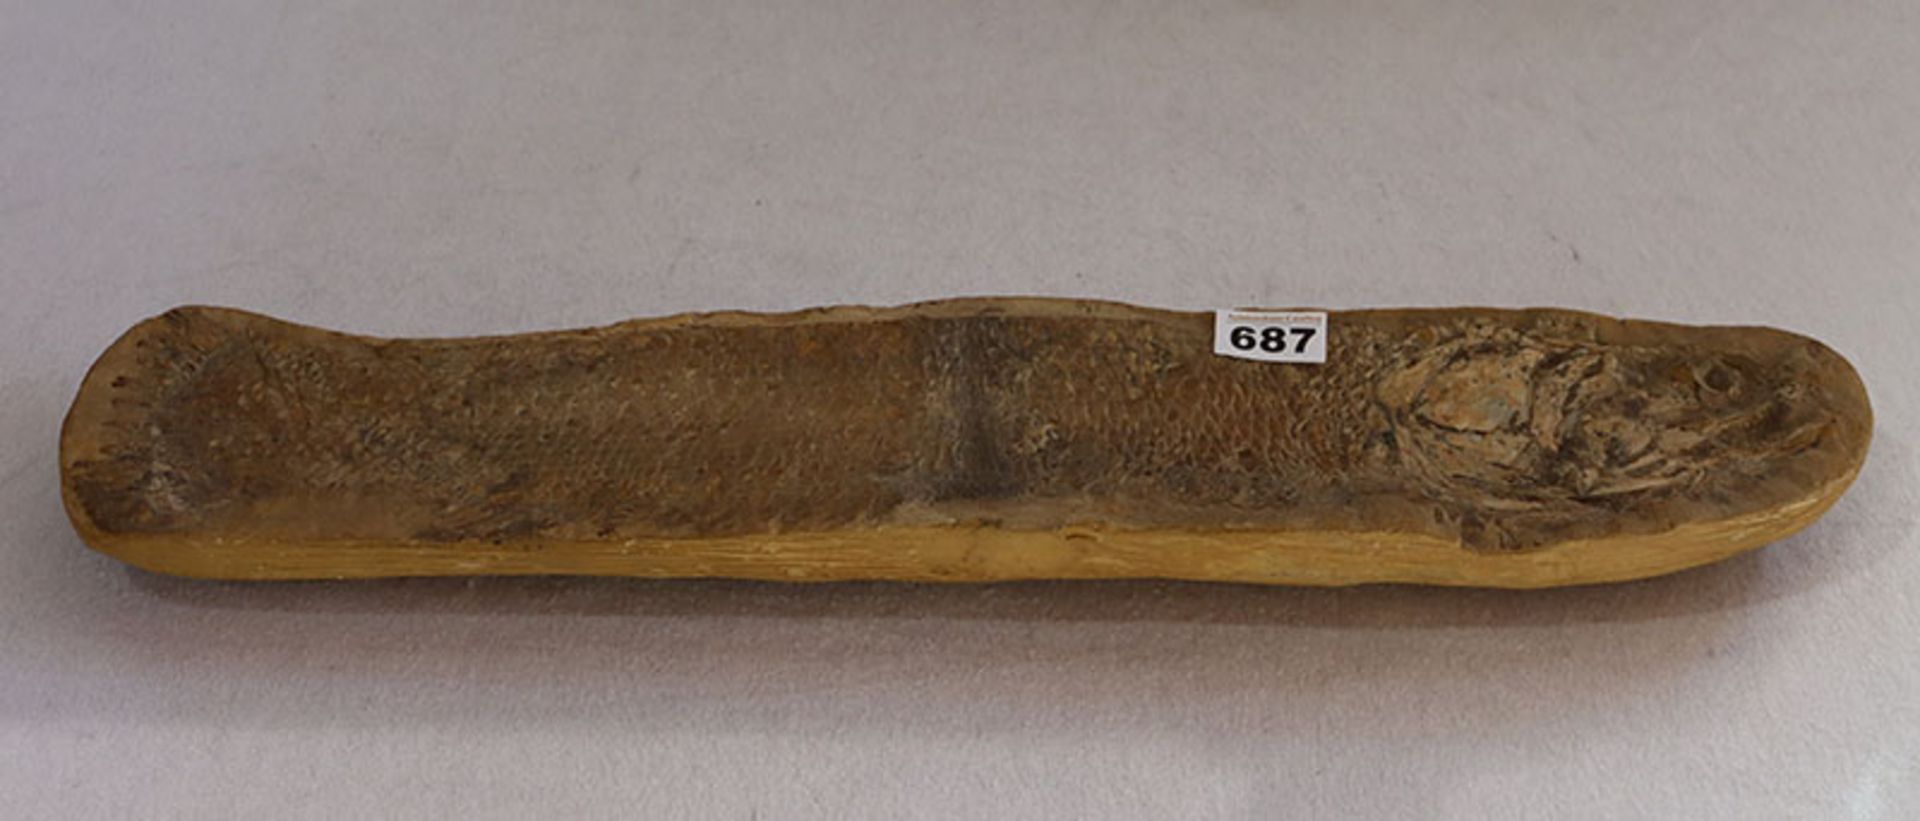 Fossil eines versteinerten Fisches, L 62 cm